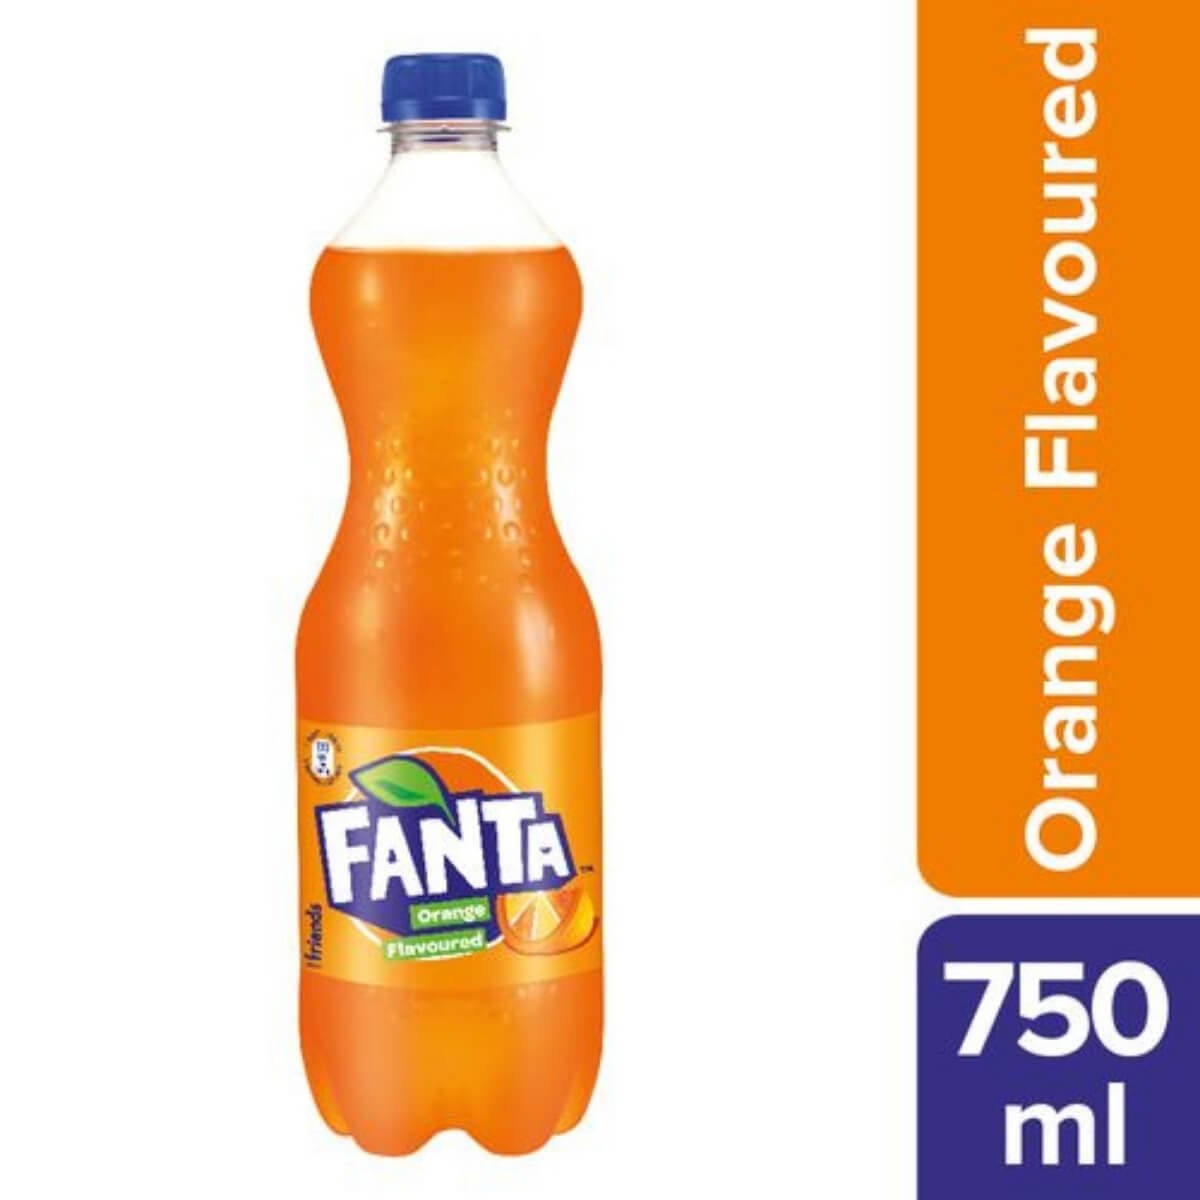 Fanta Orange flavoured, 750 ml